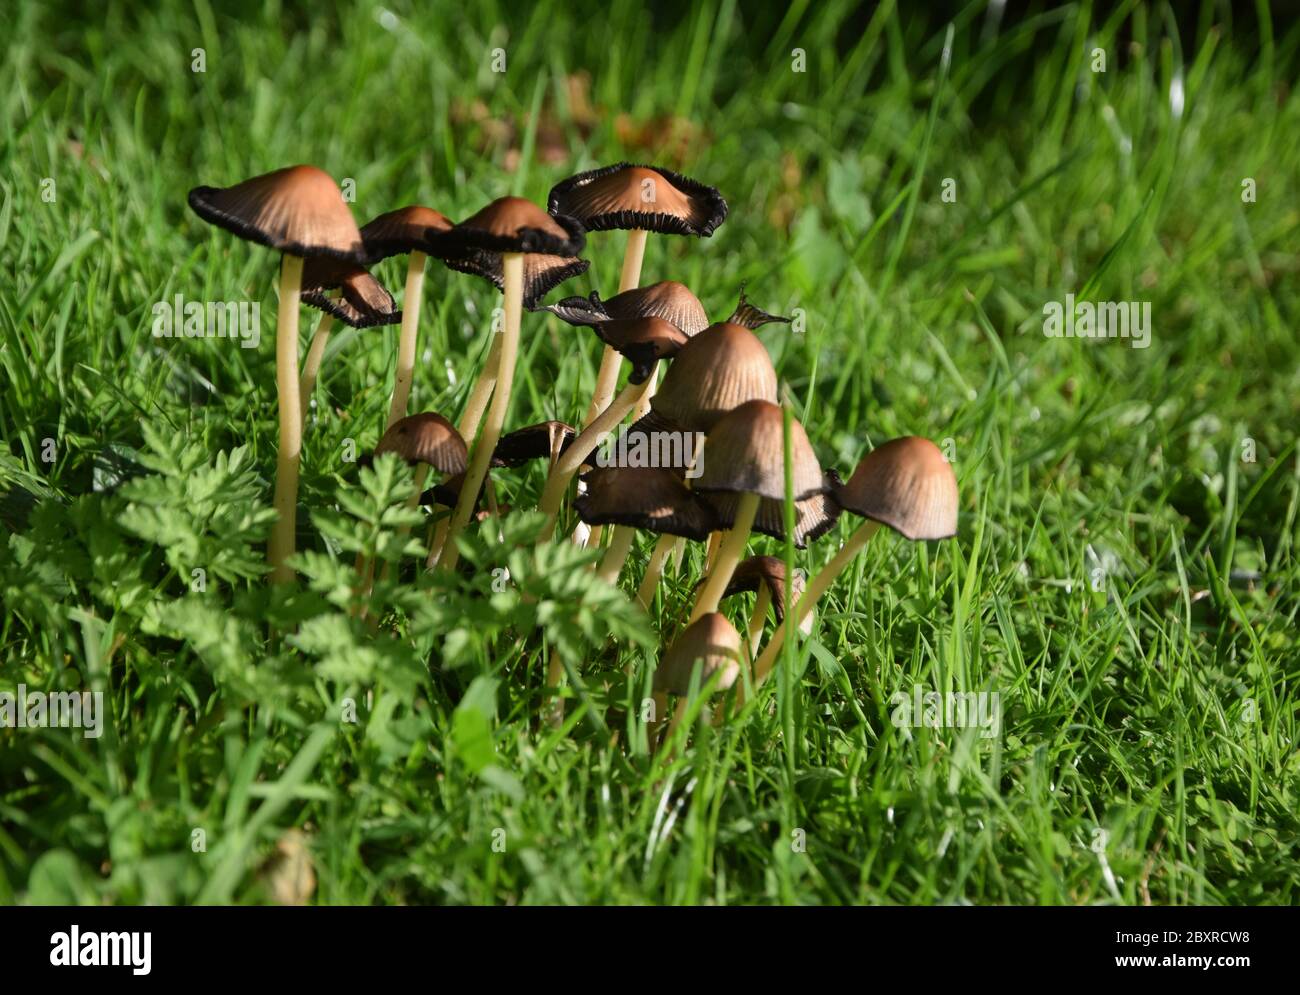 common ink cap fungus Stock Photo